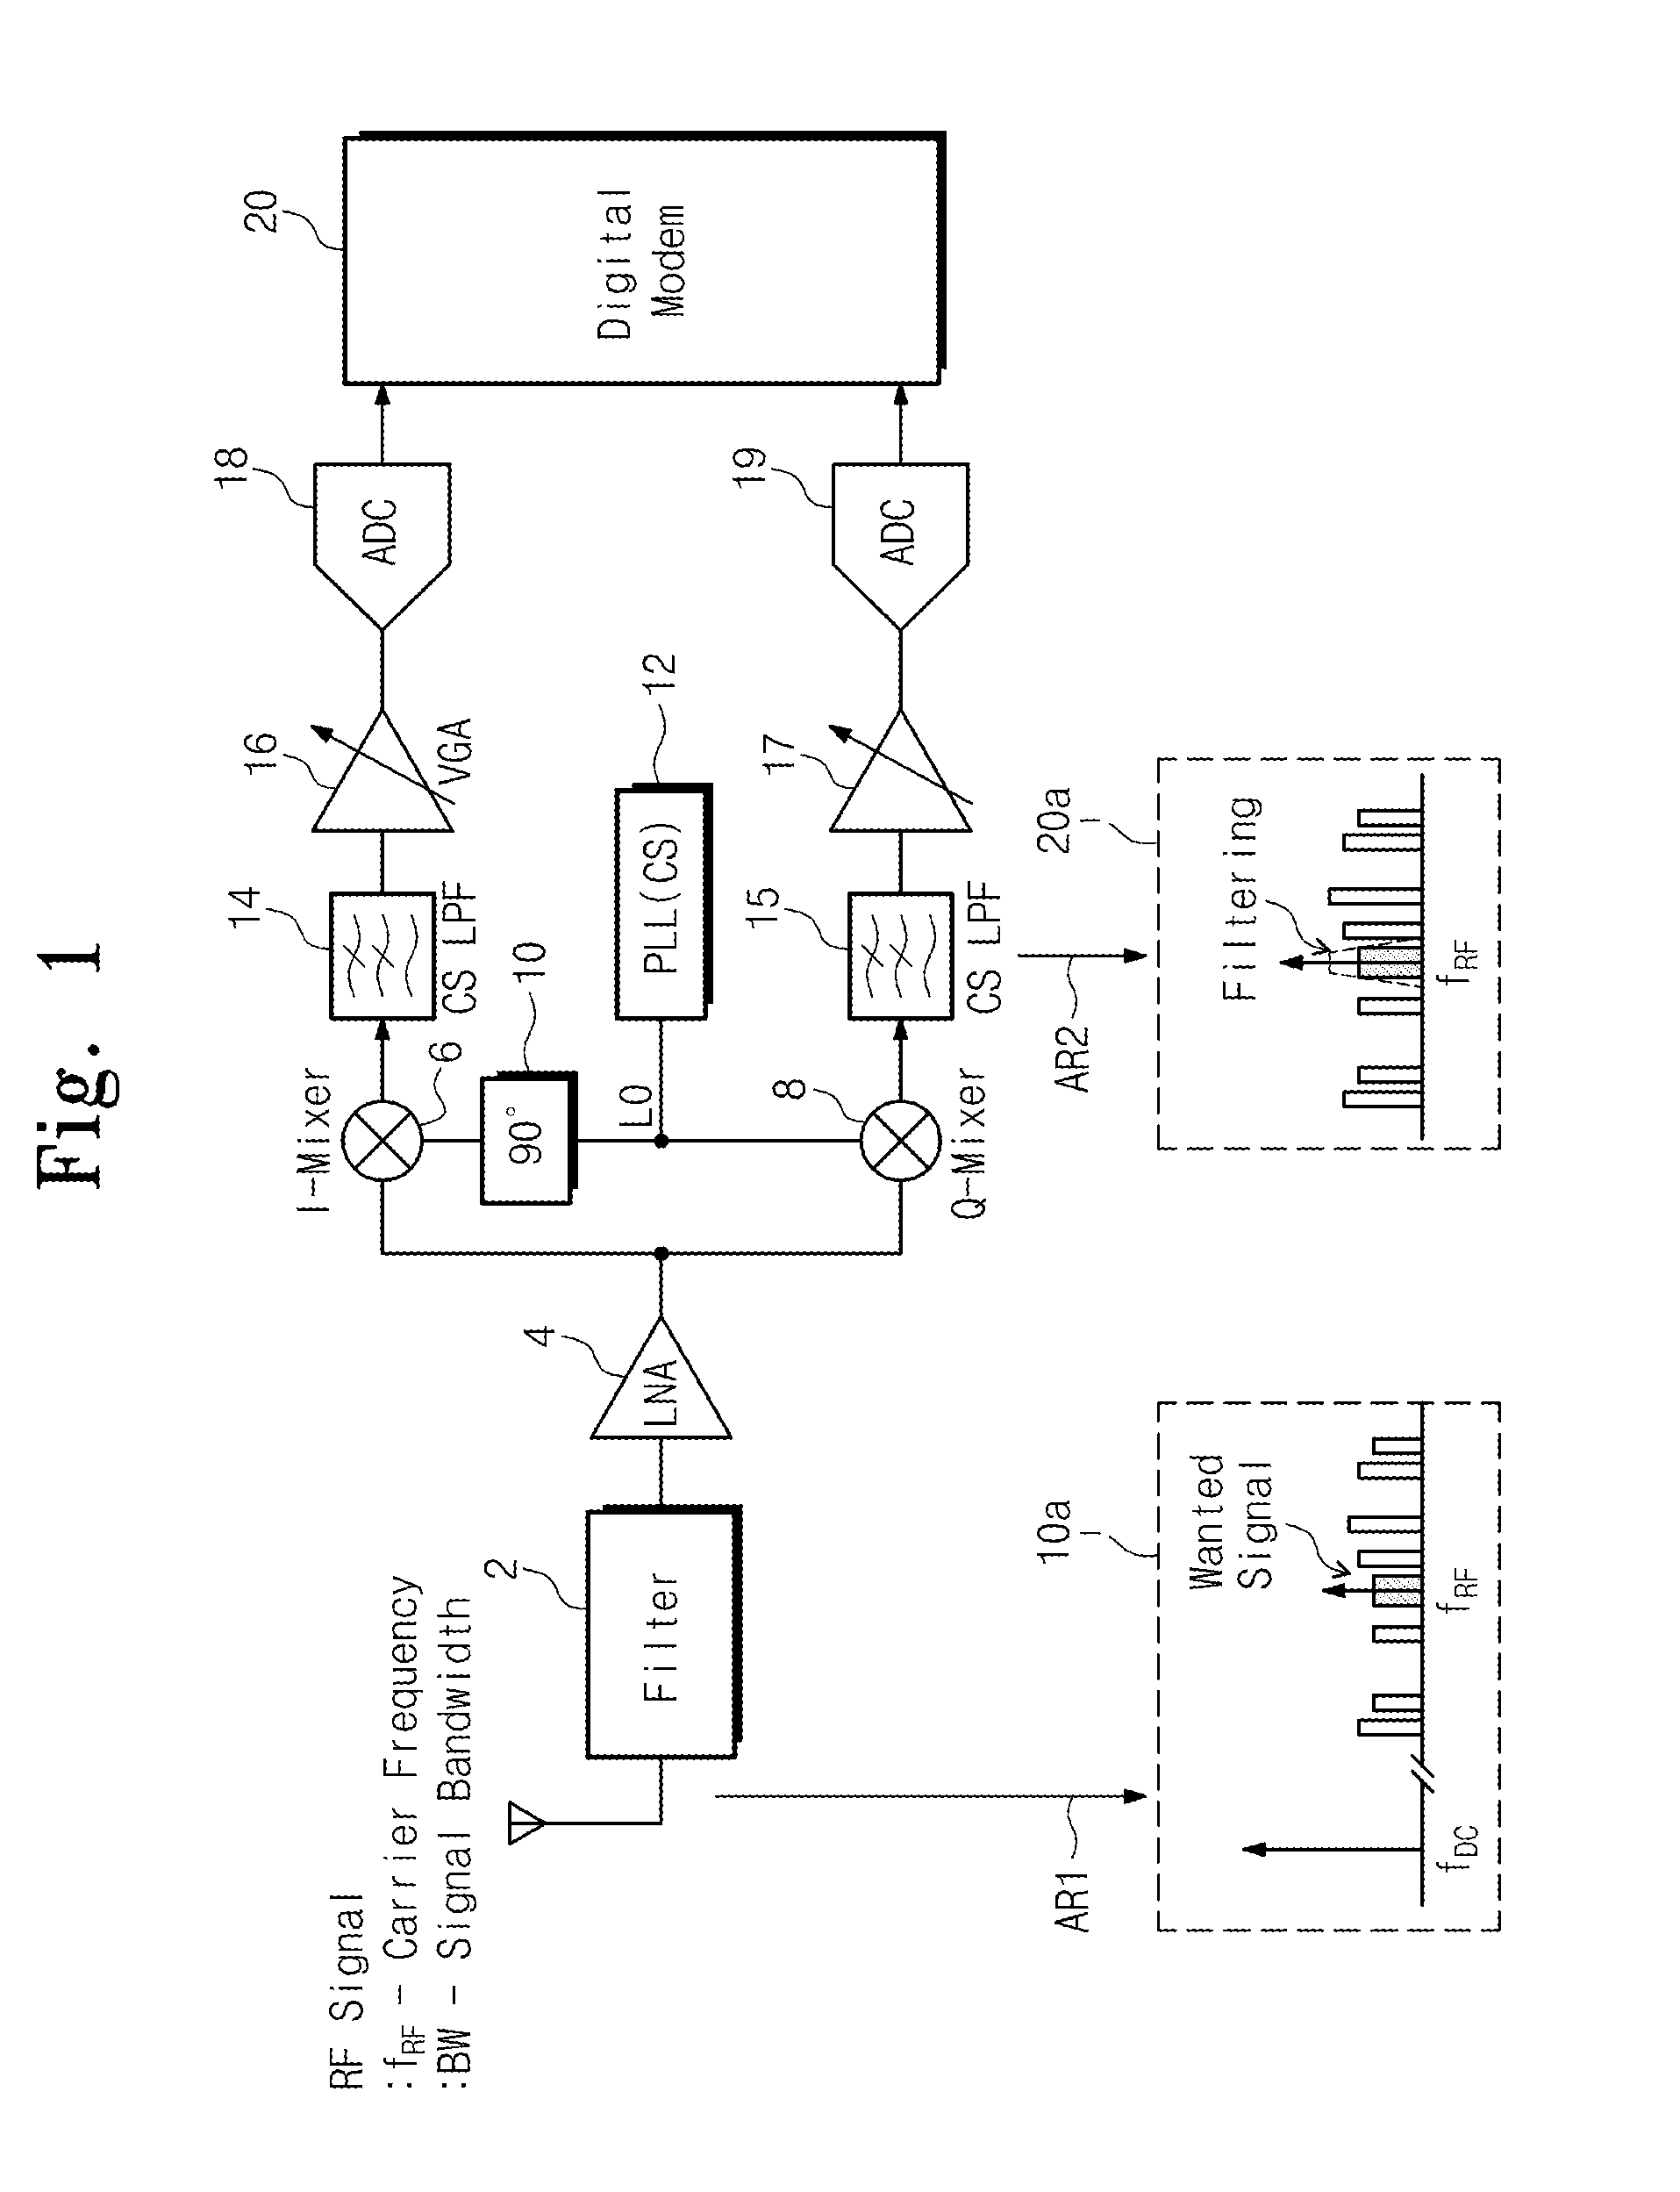 Digital front-end structure of sub-sampling based digital receiver